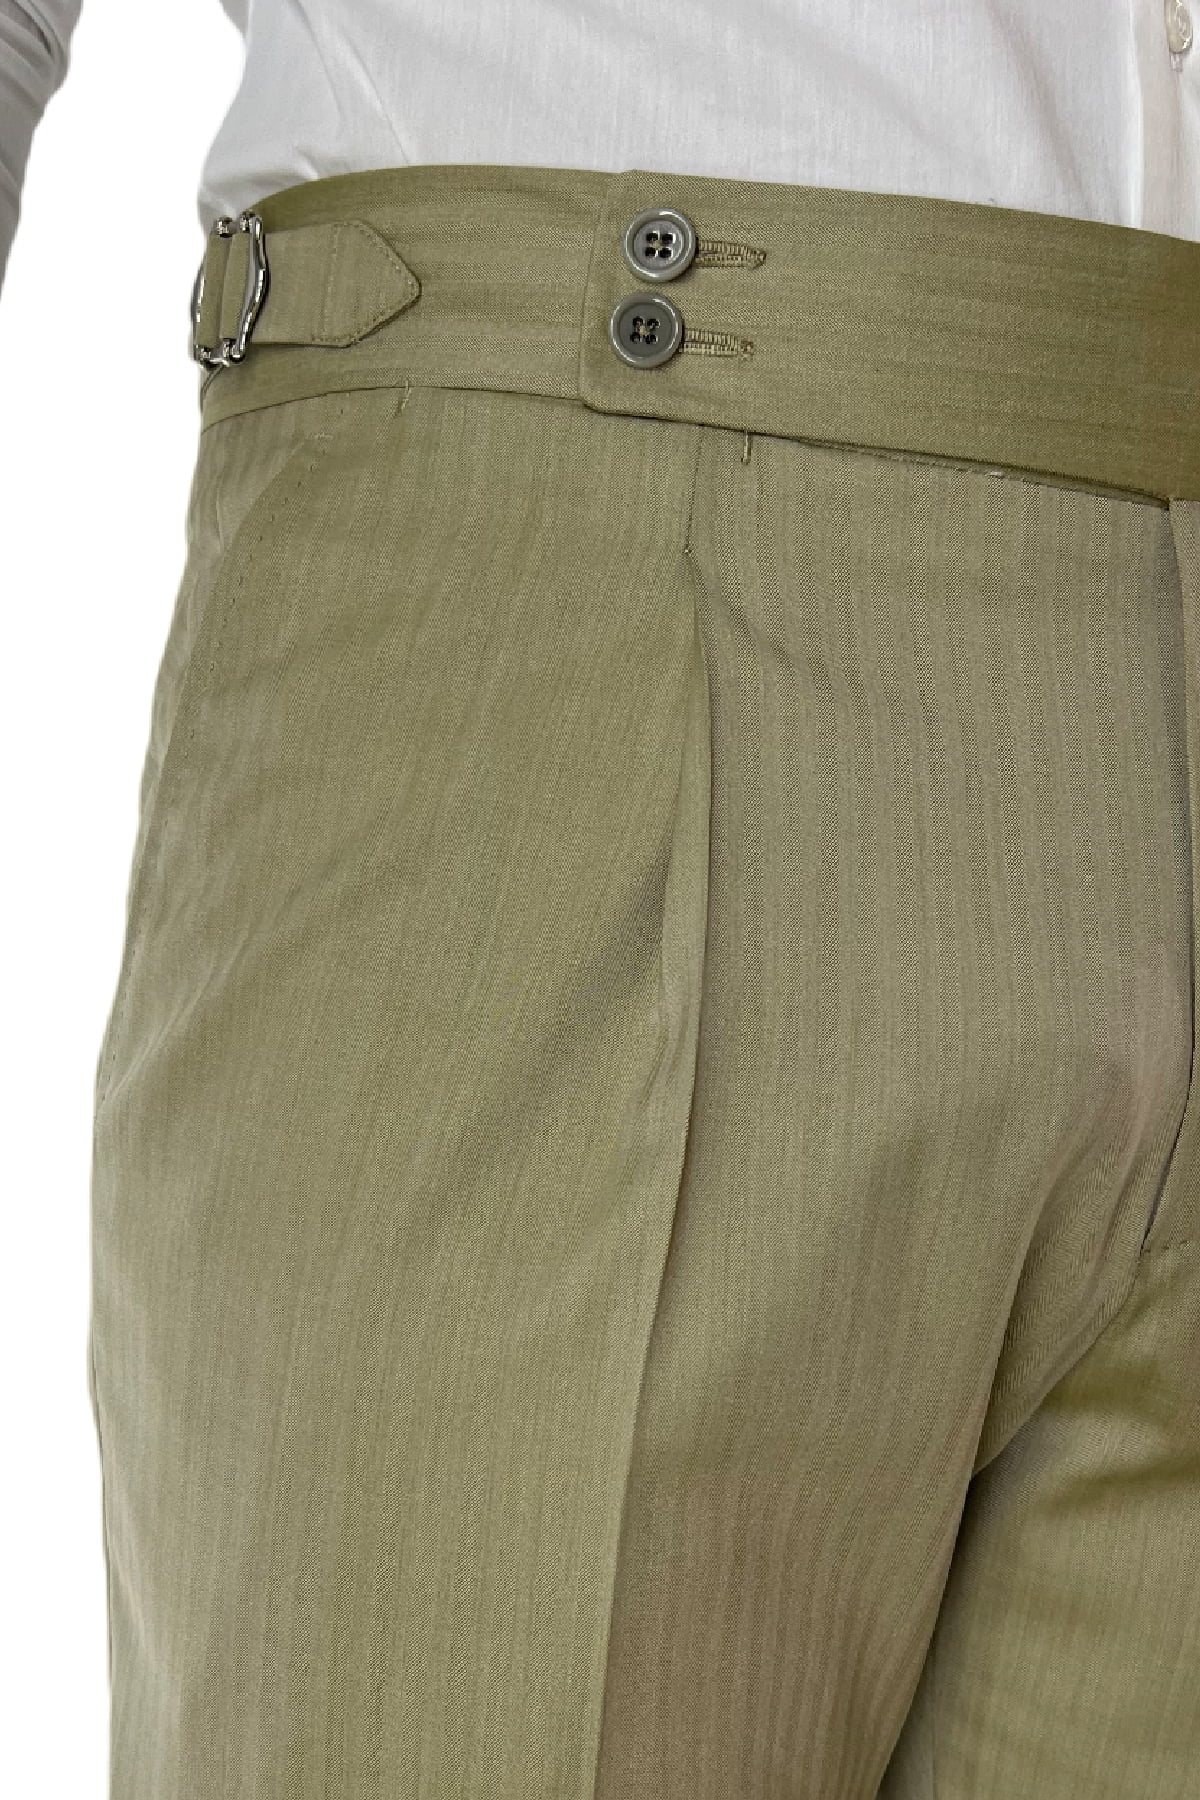 Pantalone uomo Verde Chiaro Solaro in fresco lana e seta Holland & Sherry vita alta con pinces fibbie laterali e risvolto 4cm